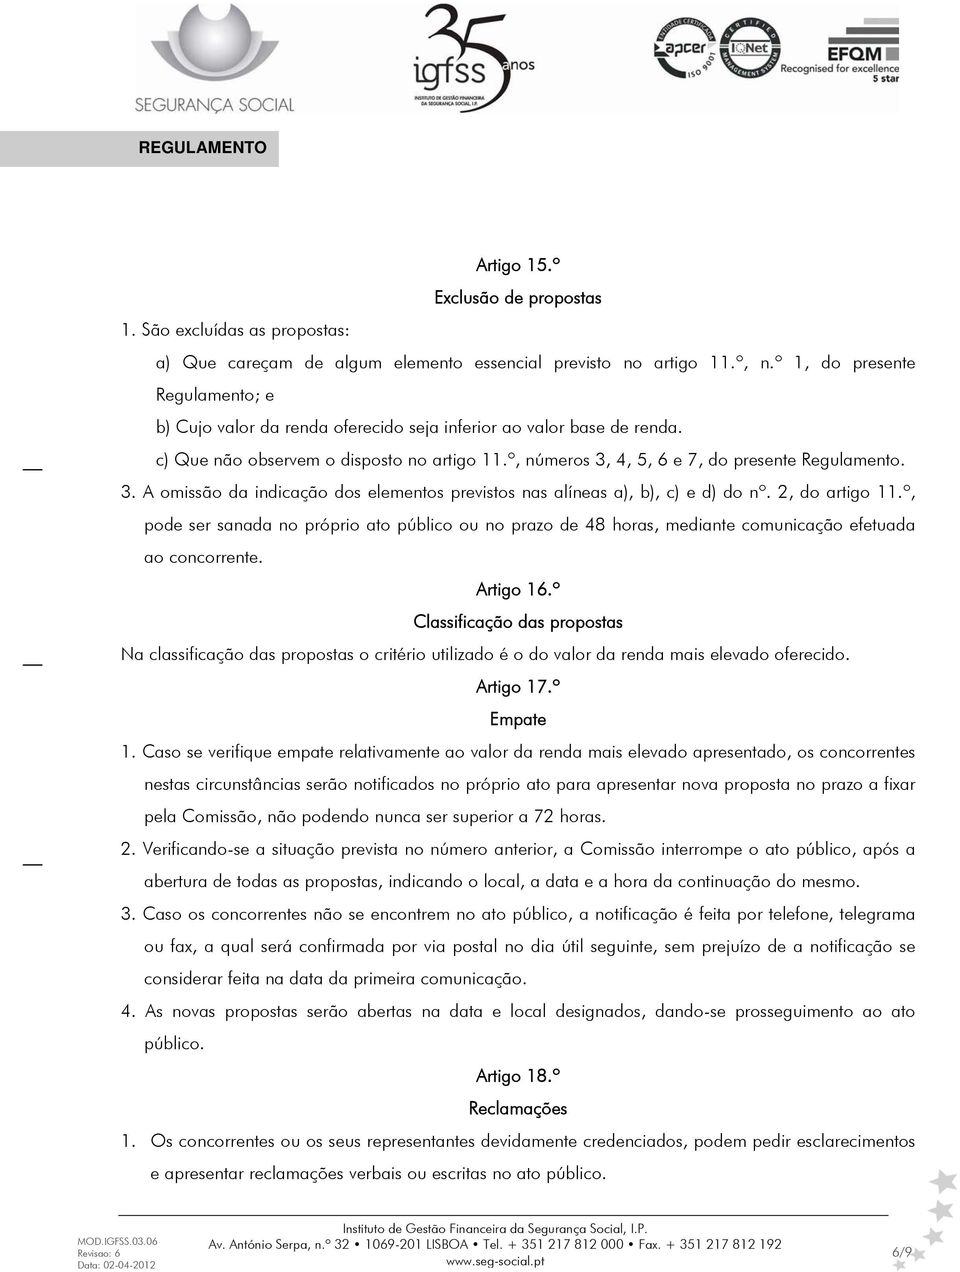 3. A omissão da indicação dos elementos previstos nas alíneas a), b), c) e d) do nº. 2, do artigo 11.